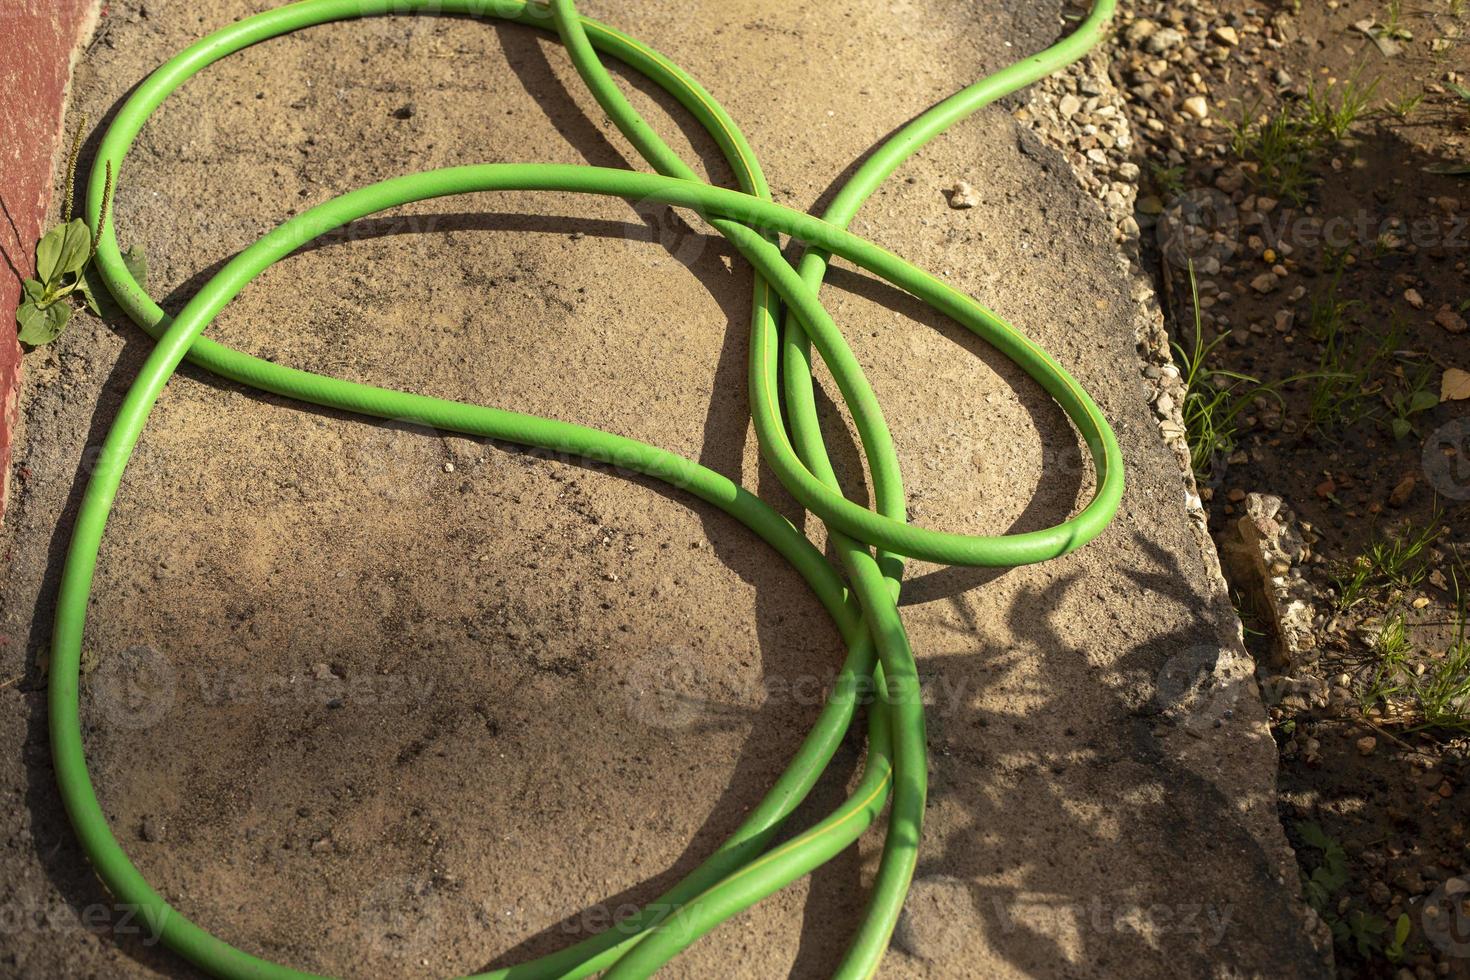 lineal invernadero Mariscos manguera flexible verde para regar el jardín. suministro de agua. 11172254  Foto de stock en Vecteezy